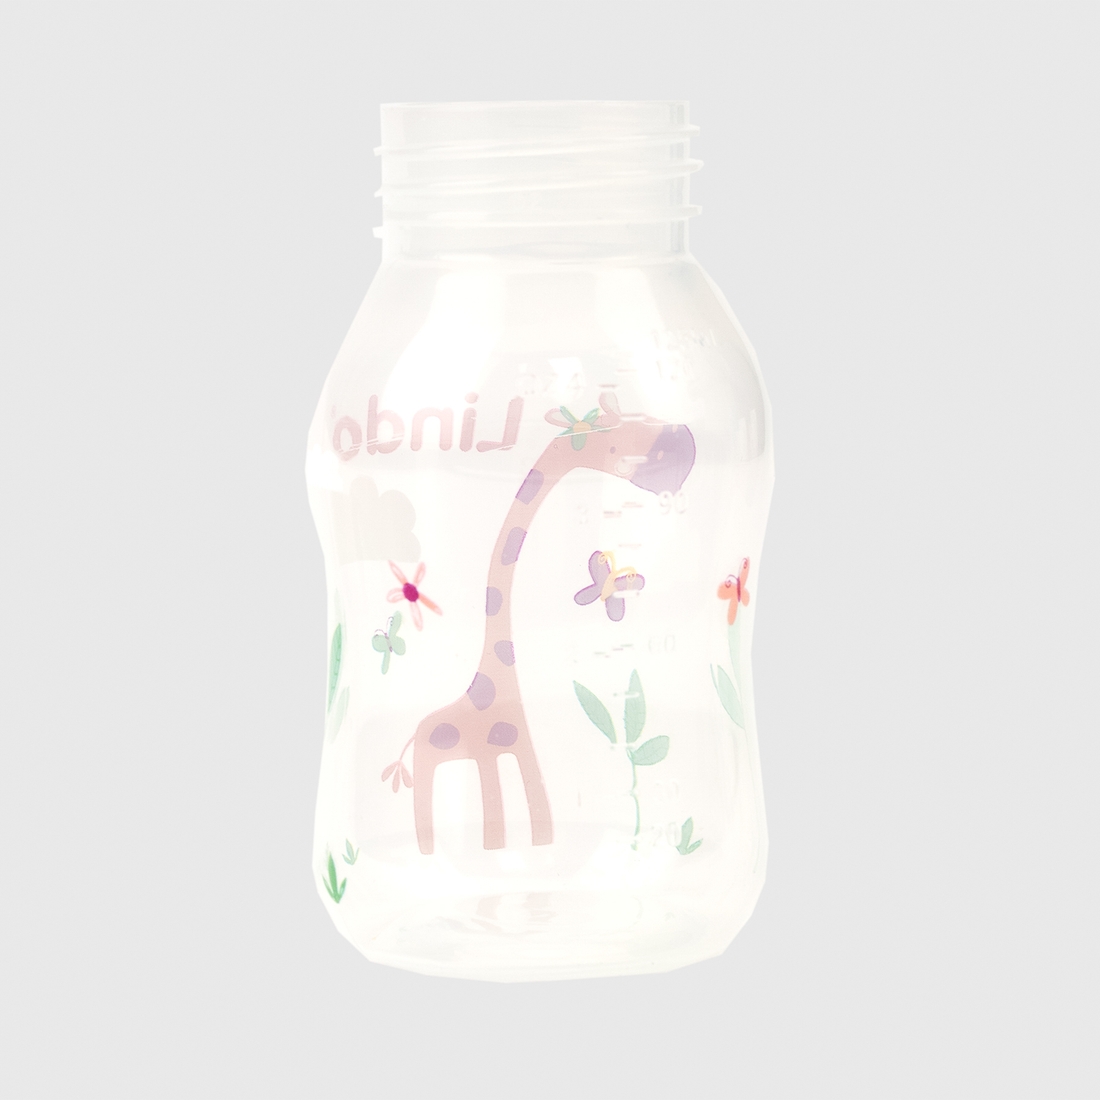 Фото Пляшка кругла Lindo LI146 з силіконовою соскою Рожевий (2000990122544)